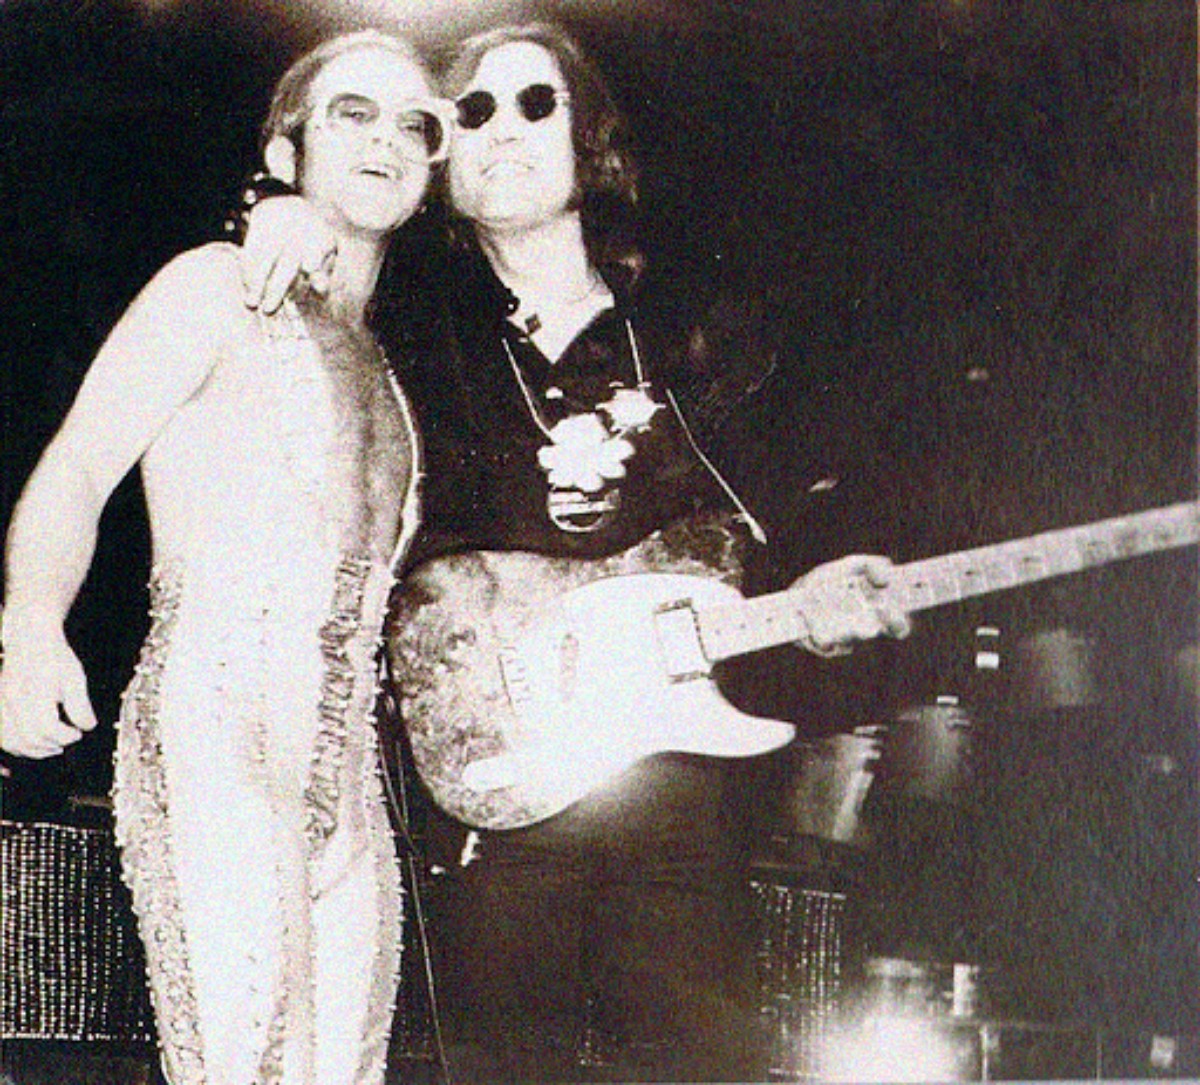 Elton John and John Lennon...